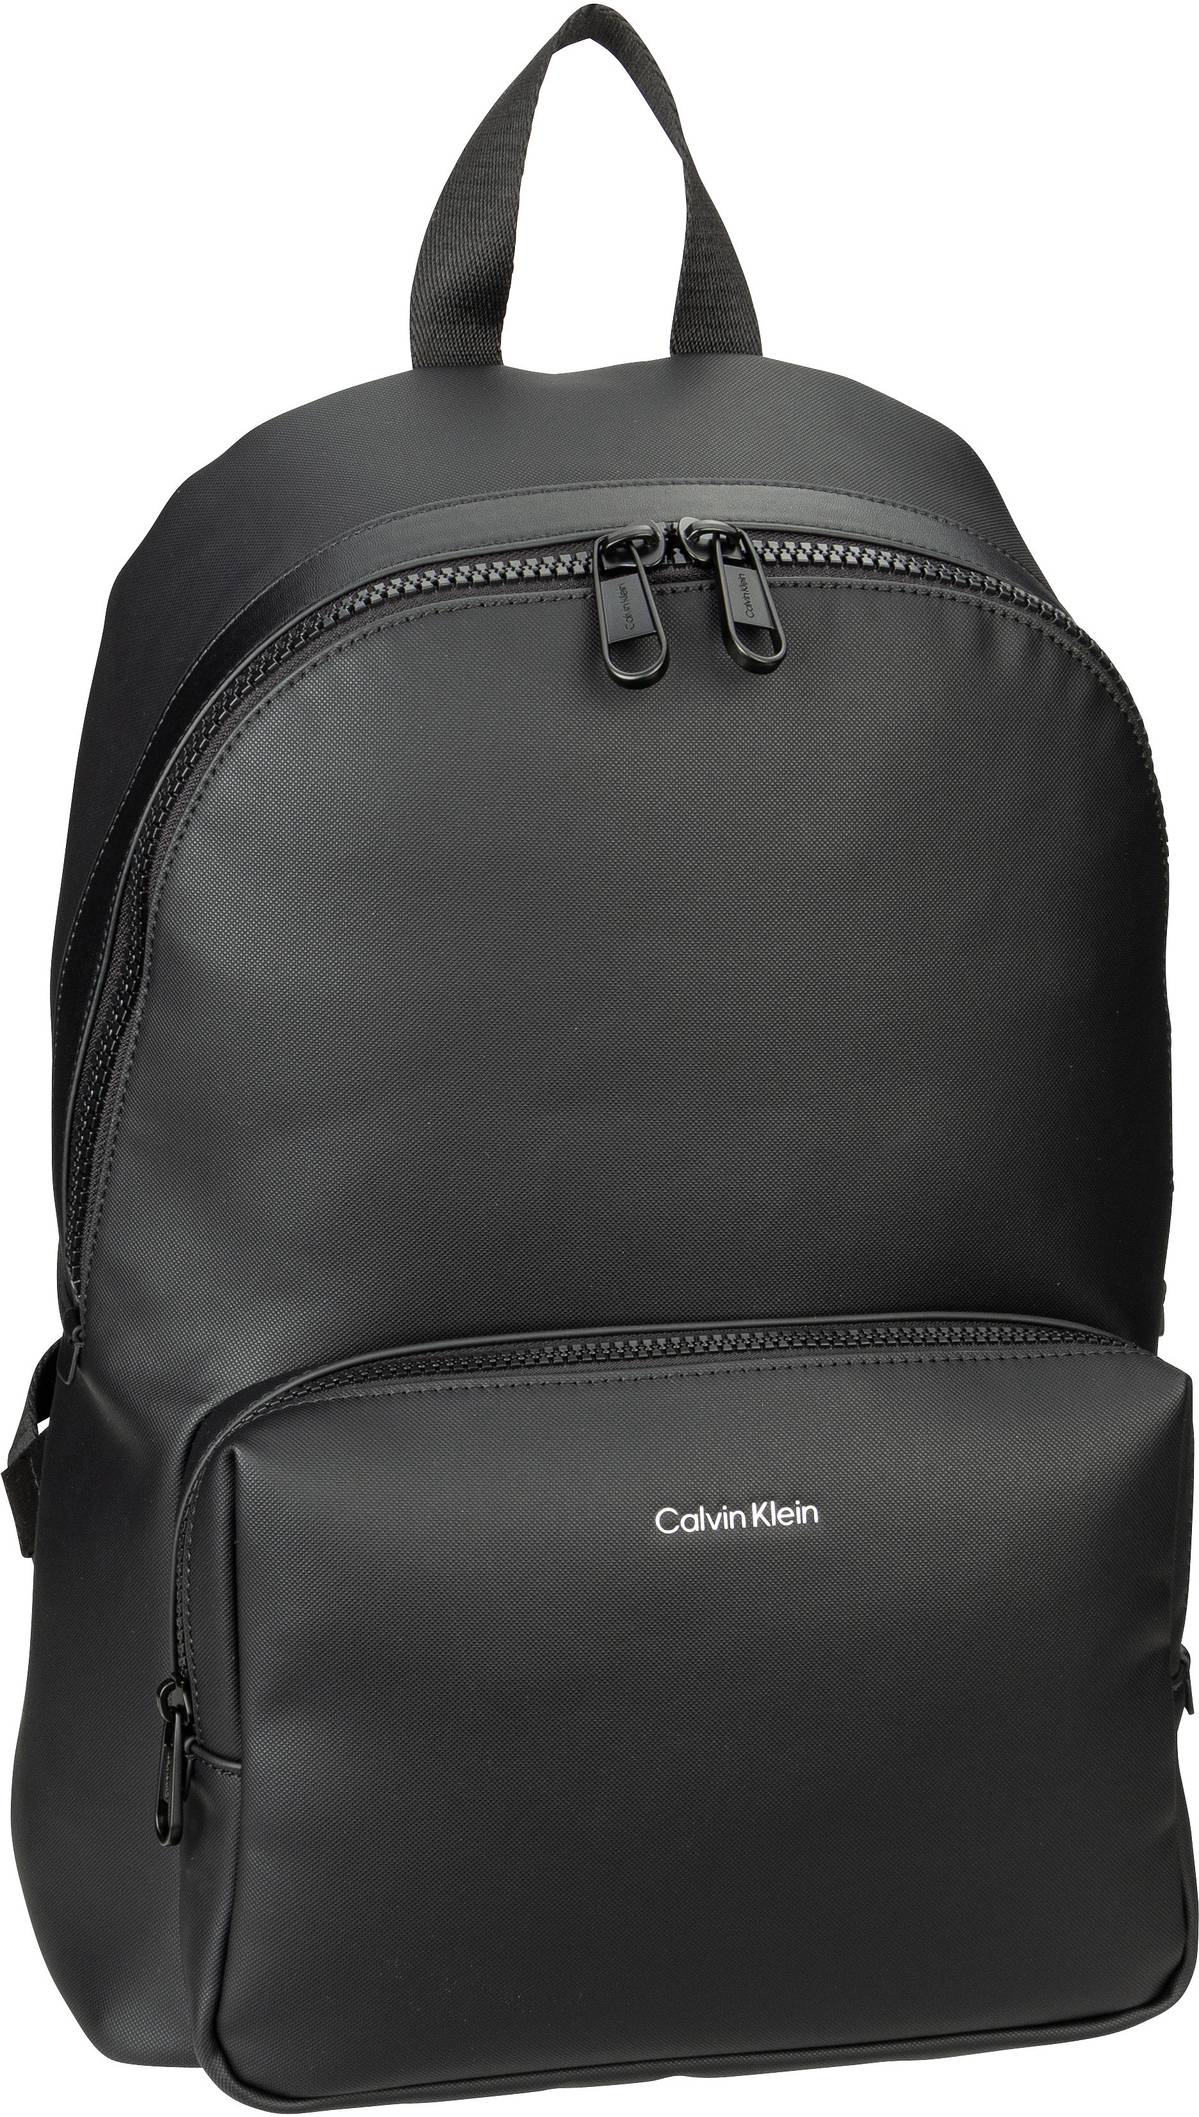 Calvin Klein Calvin Klein CK Must Campus Backpack PSP24 in Schwarz (25.8 Liter), Rucksack / Backpack